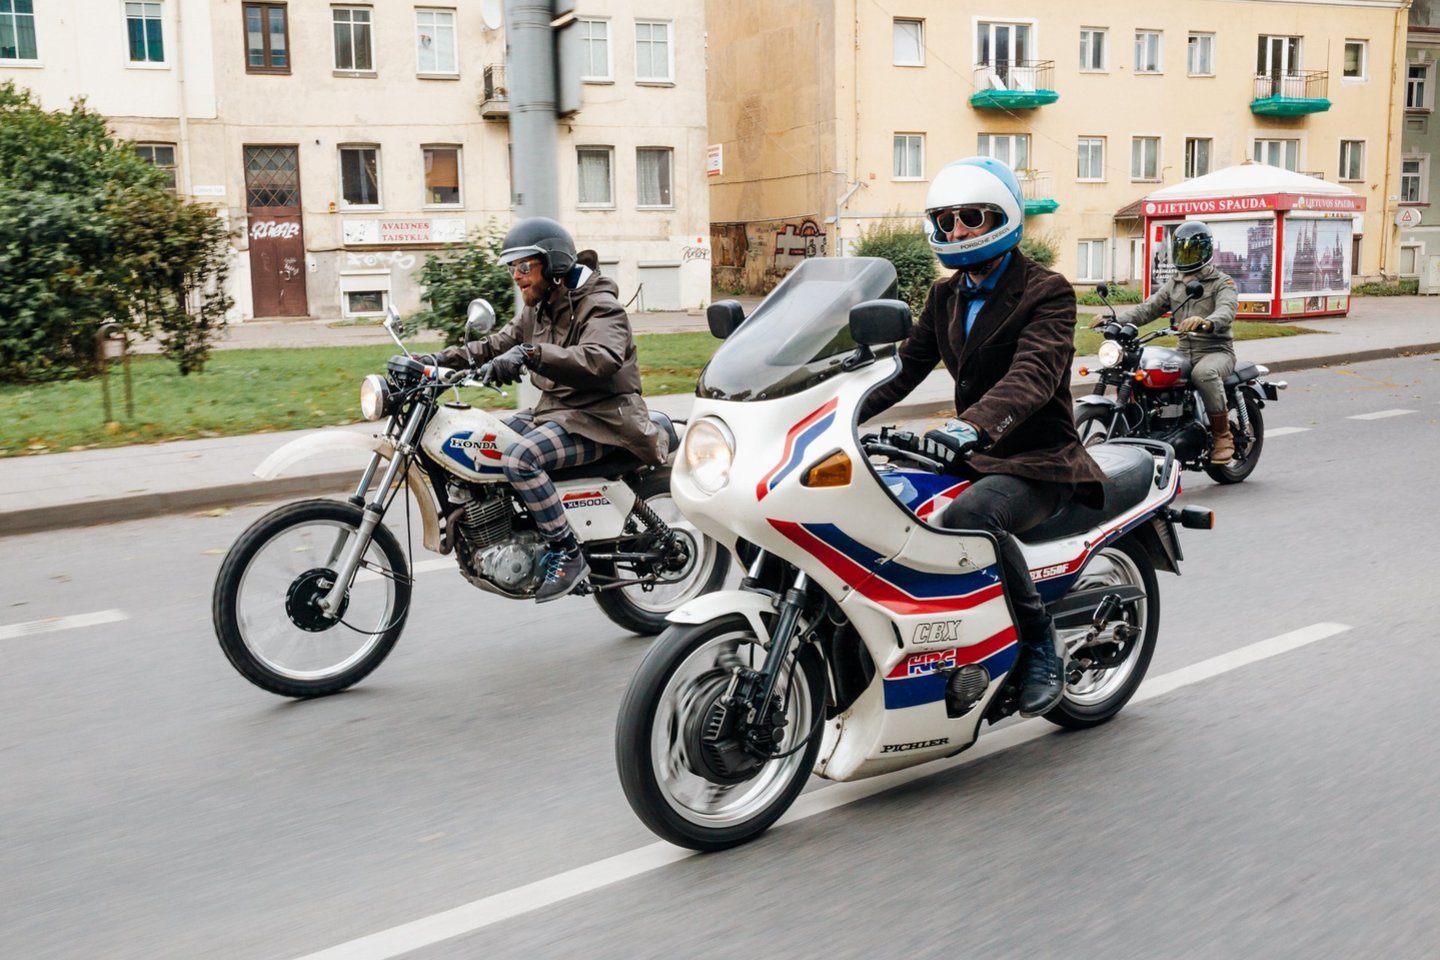  „Distinguished Gentelman’s Ride“ labdaringo motociklininkų važiavimo akimirkos.<br> A. Kirsnytės nuotr.